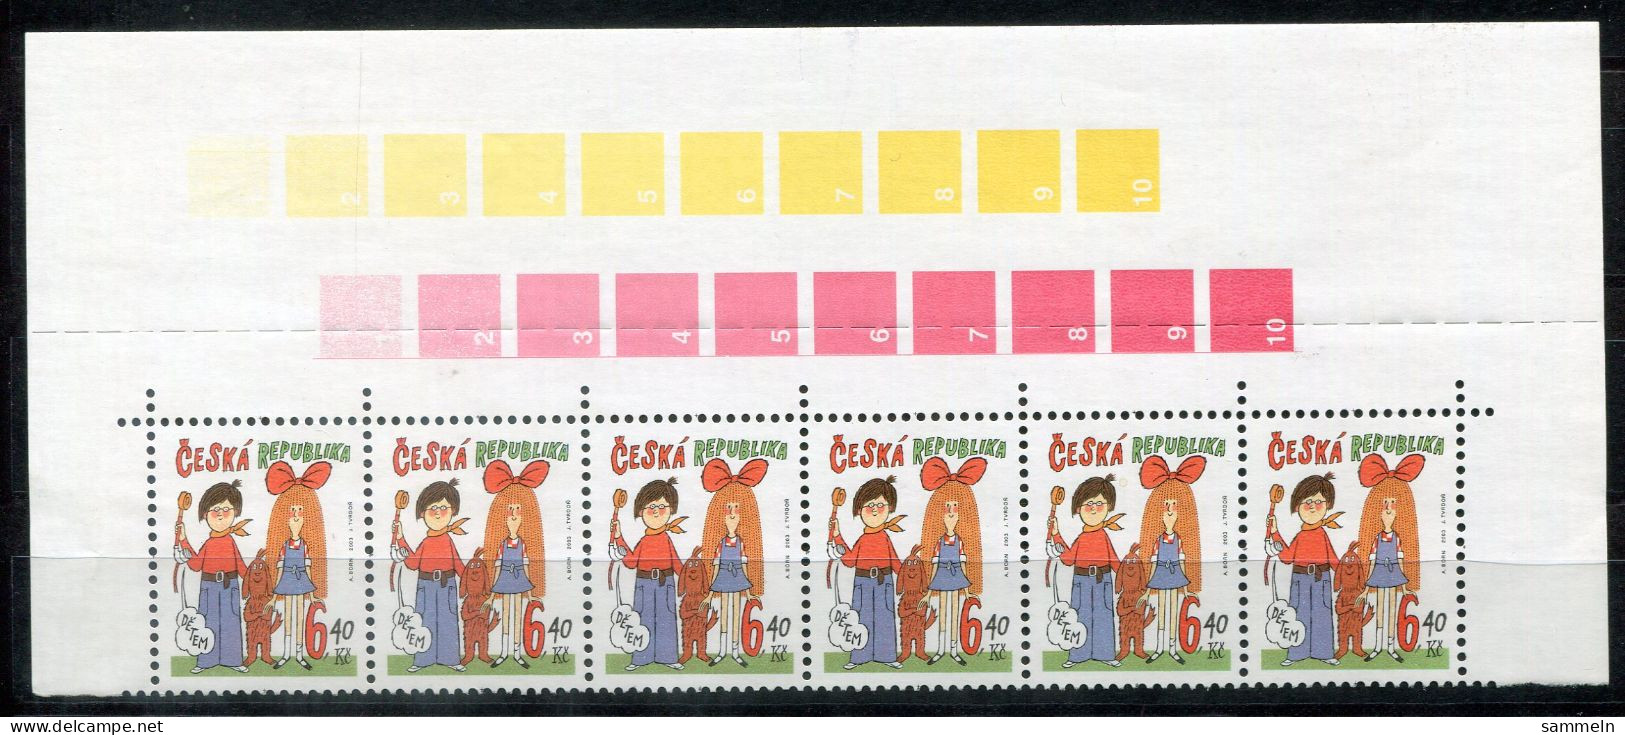 TSCHECHISCHE REPUBLIK 357 (6) Mnh - Weltkindertag, Children's Day - CZECH REPUBLIC / RÉPUBLIQUE TCHÈQUE - Unused Stamps